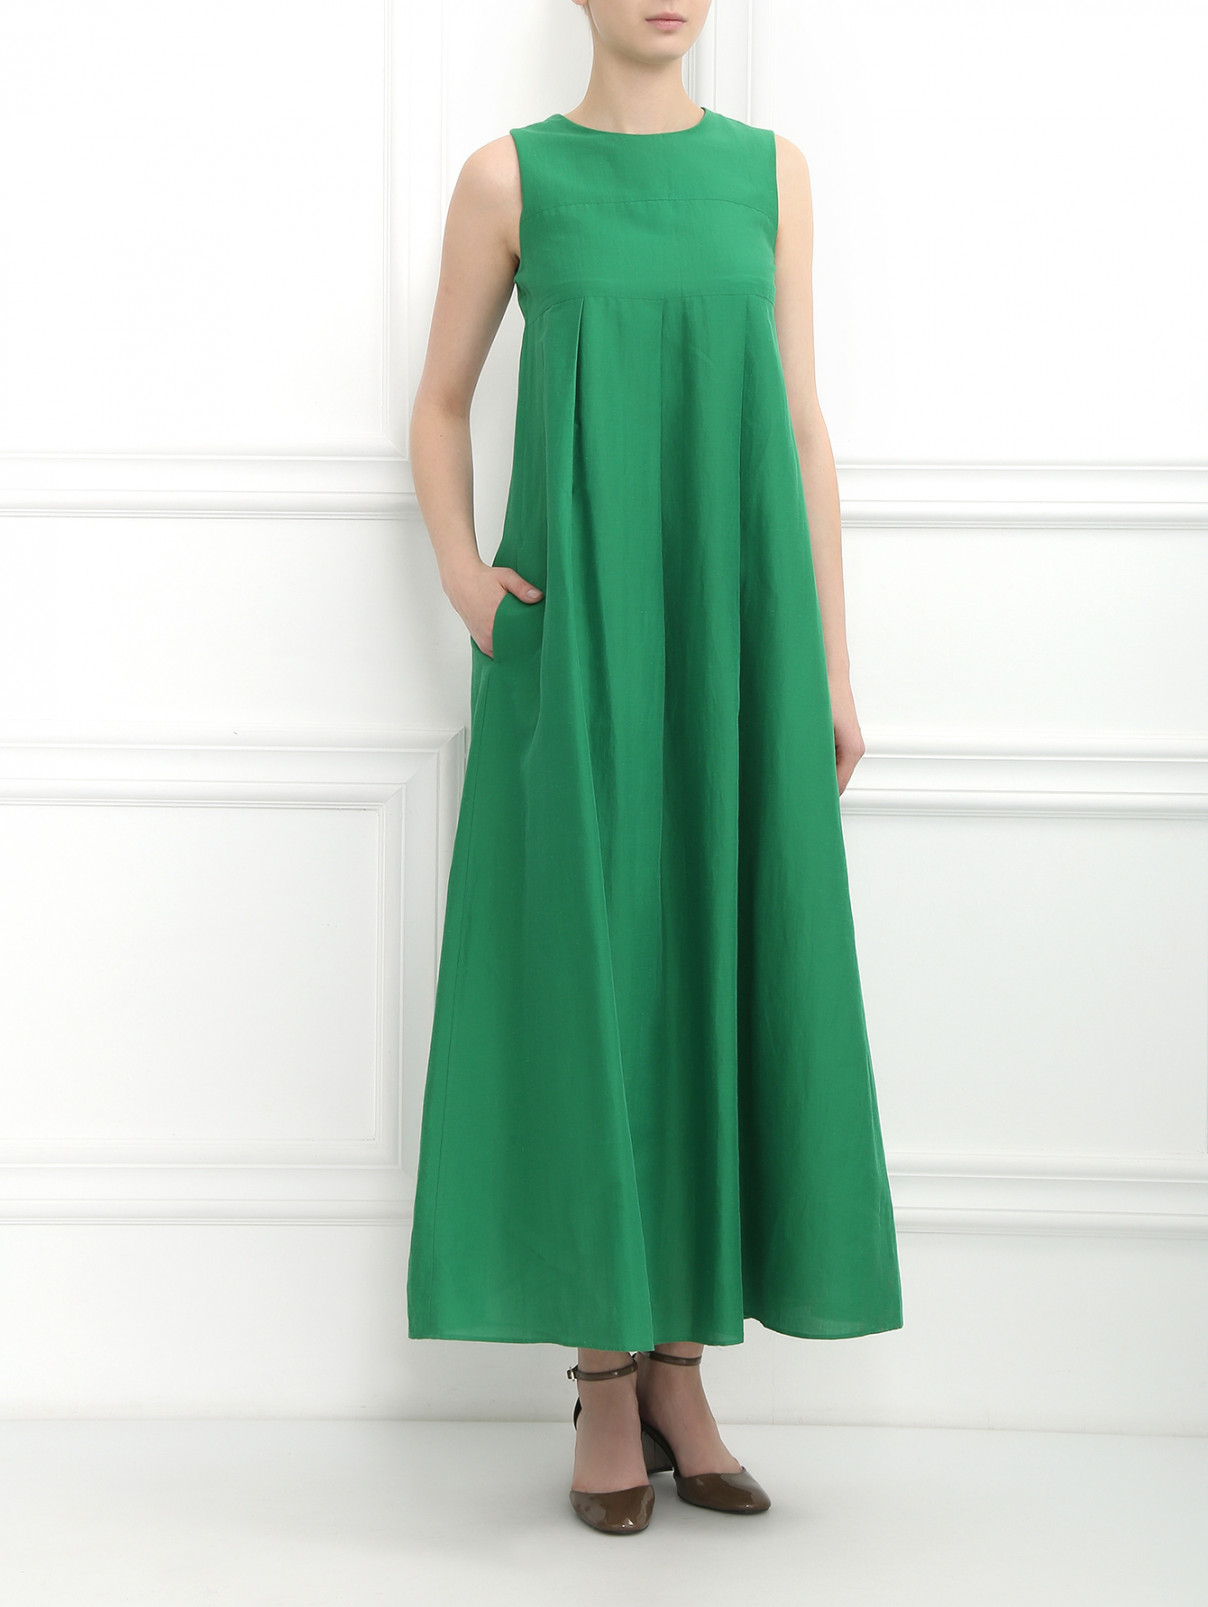 Платье-макси с боковыми карманами S Max Mara  –  Модель Общий вид  – Цвет:  Зеленый